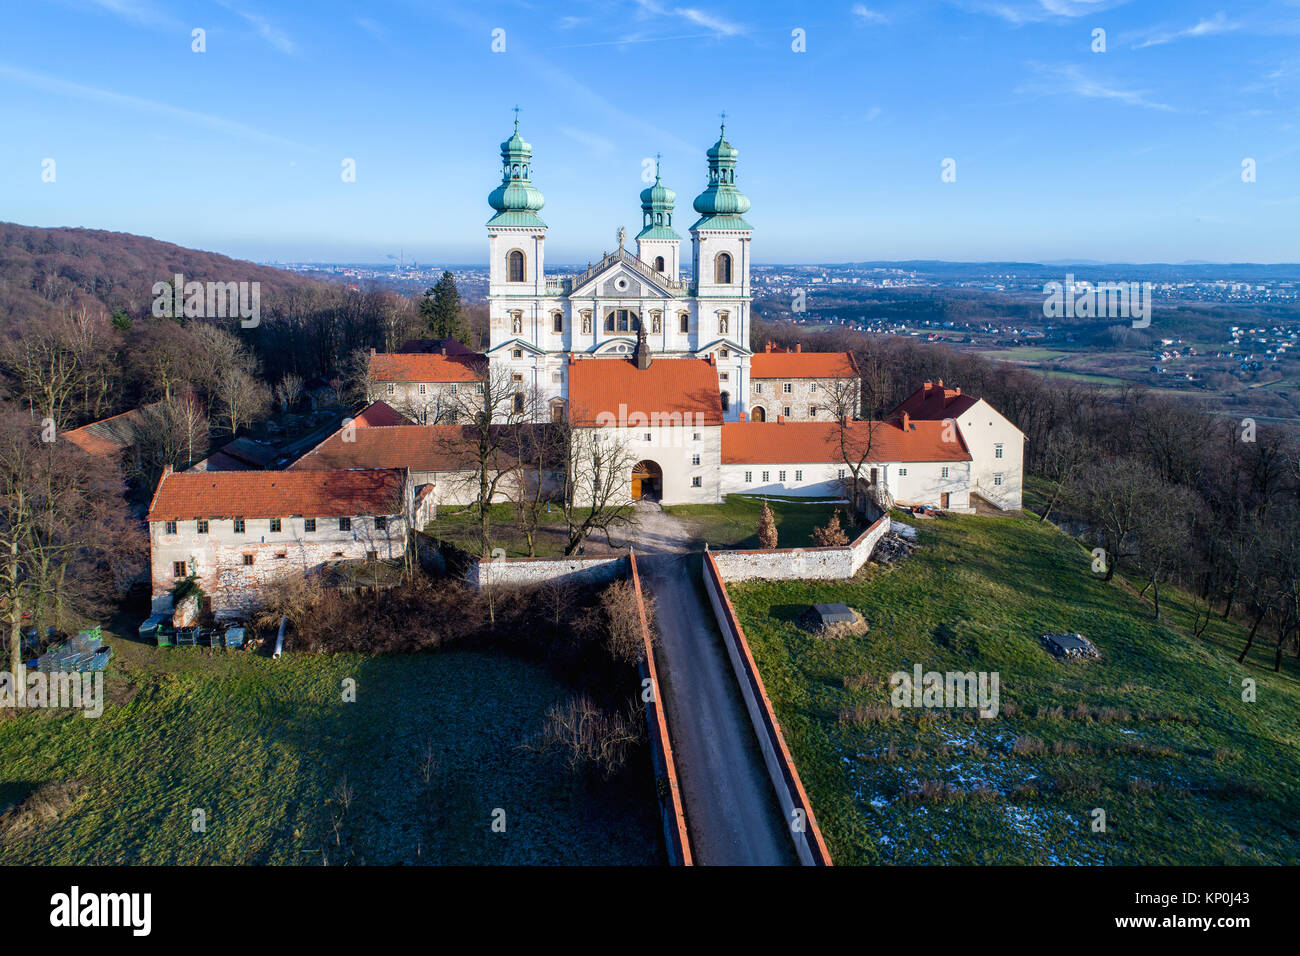 Krakau, Polen. Kloster von cameldolite Brüder und barocke Kirche im Wald auf einem Hügel in der Nähe von Tyniec Bielany. Luftbild im Winter Stockfoto